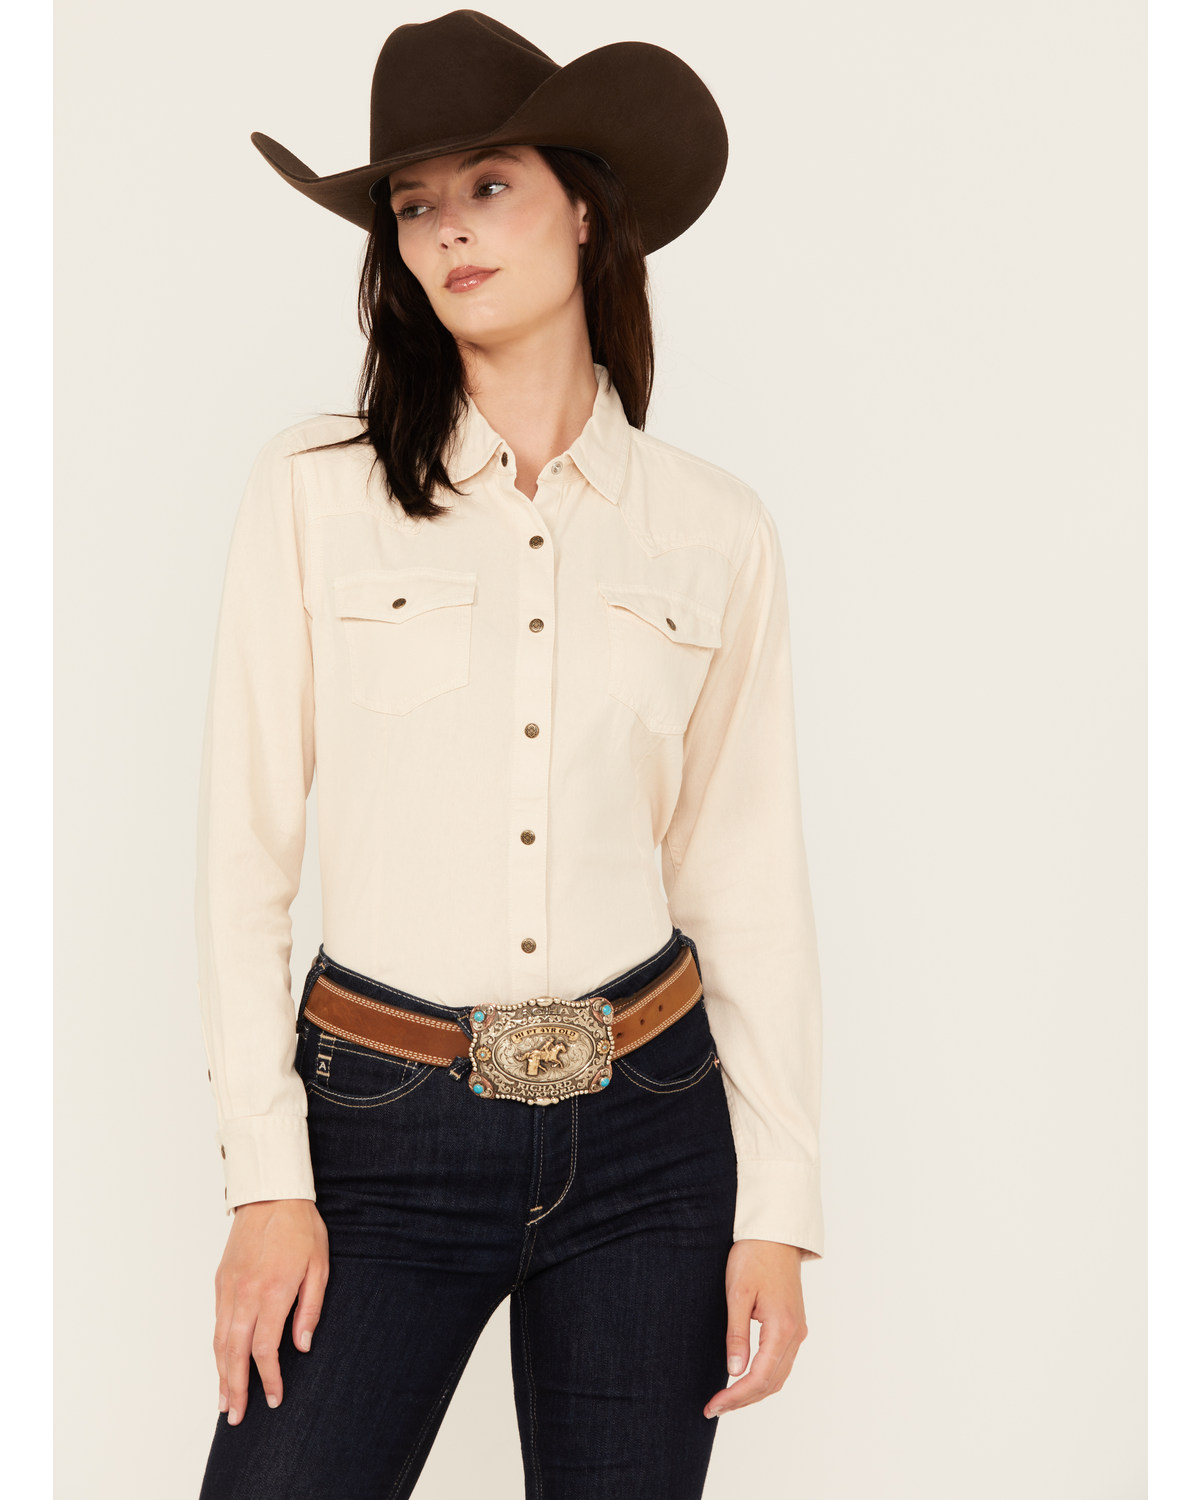 Ariat Women's R.E.A.L Jurlington Solid Long Sleeve Snap Western Shirt